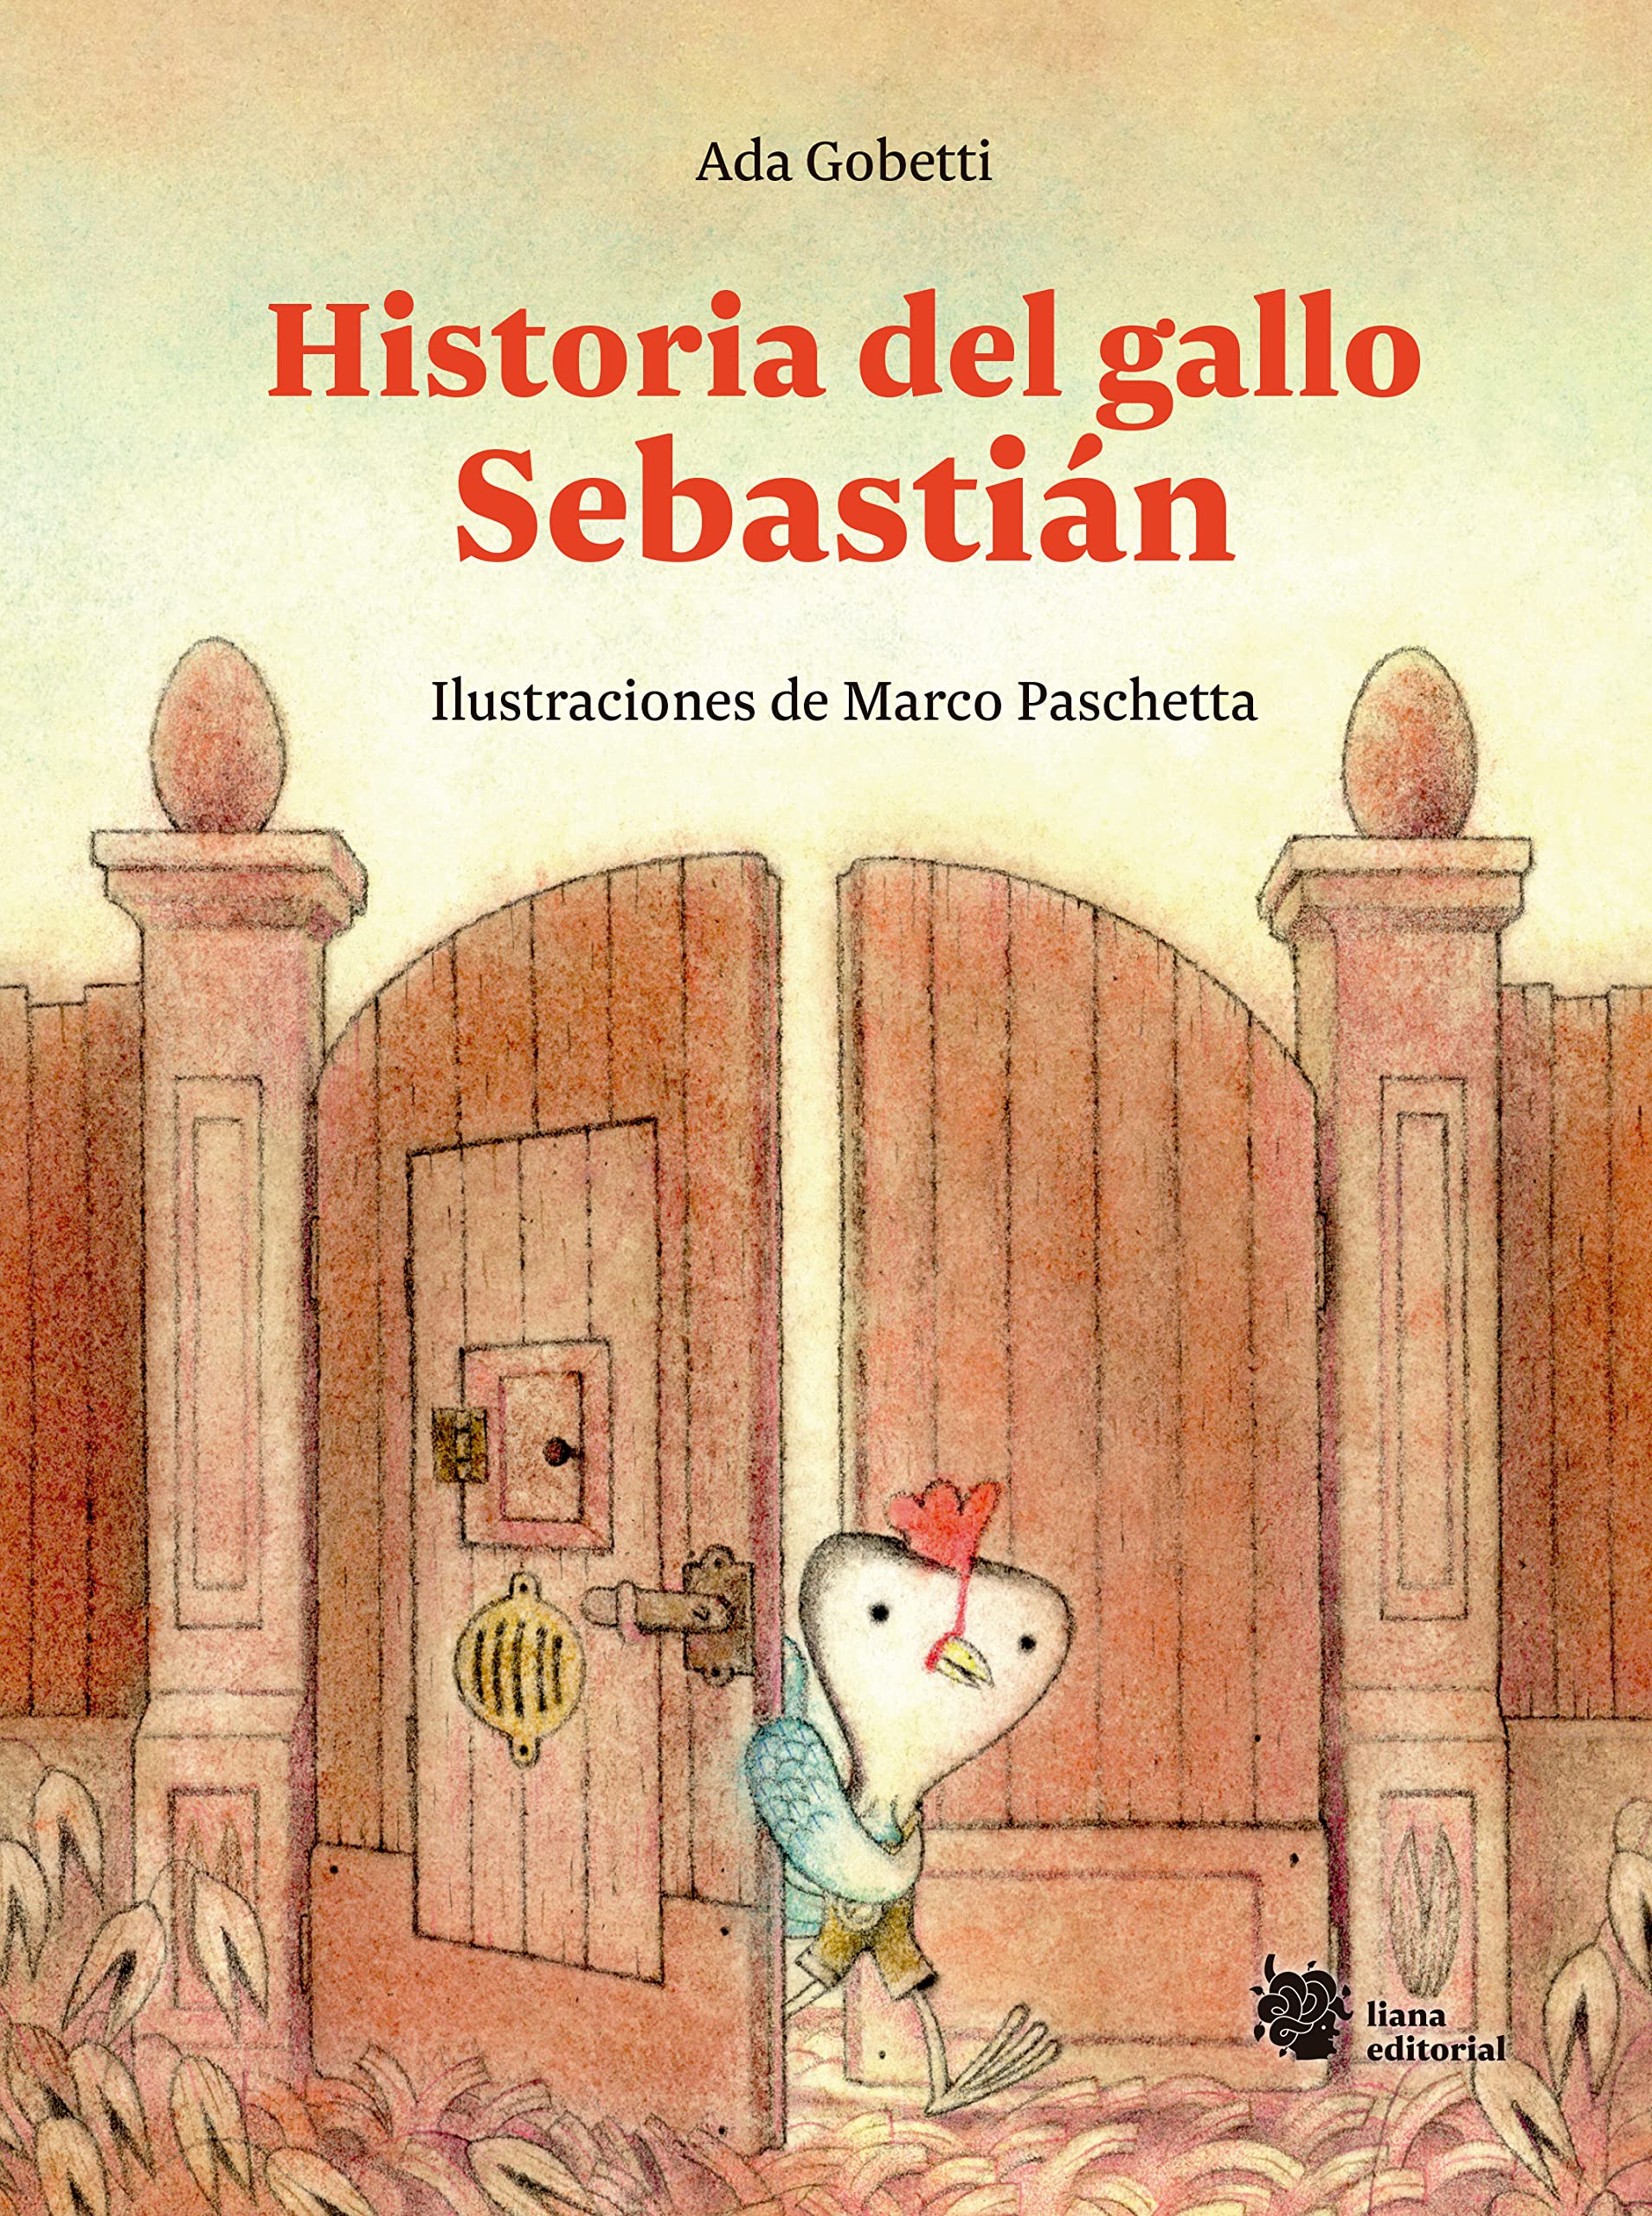 Zenda recomienda: Historia del gallo Sebastián, de Ada Gobetti